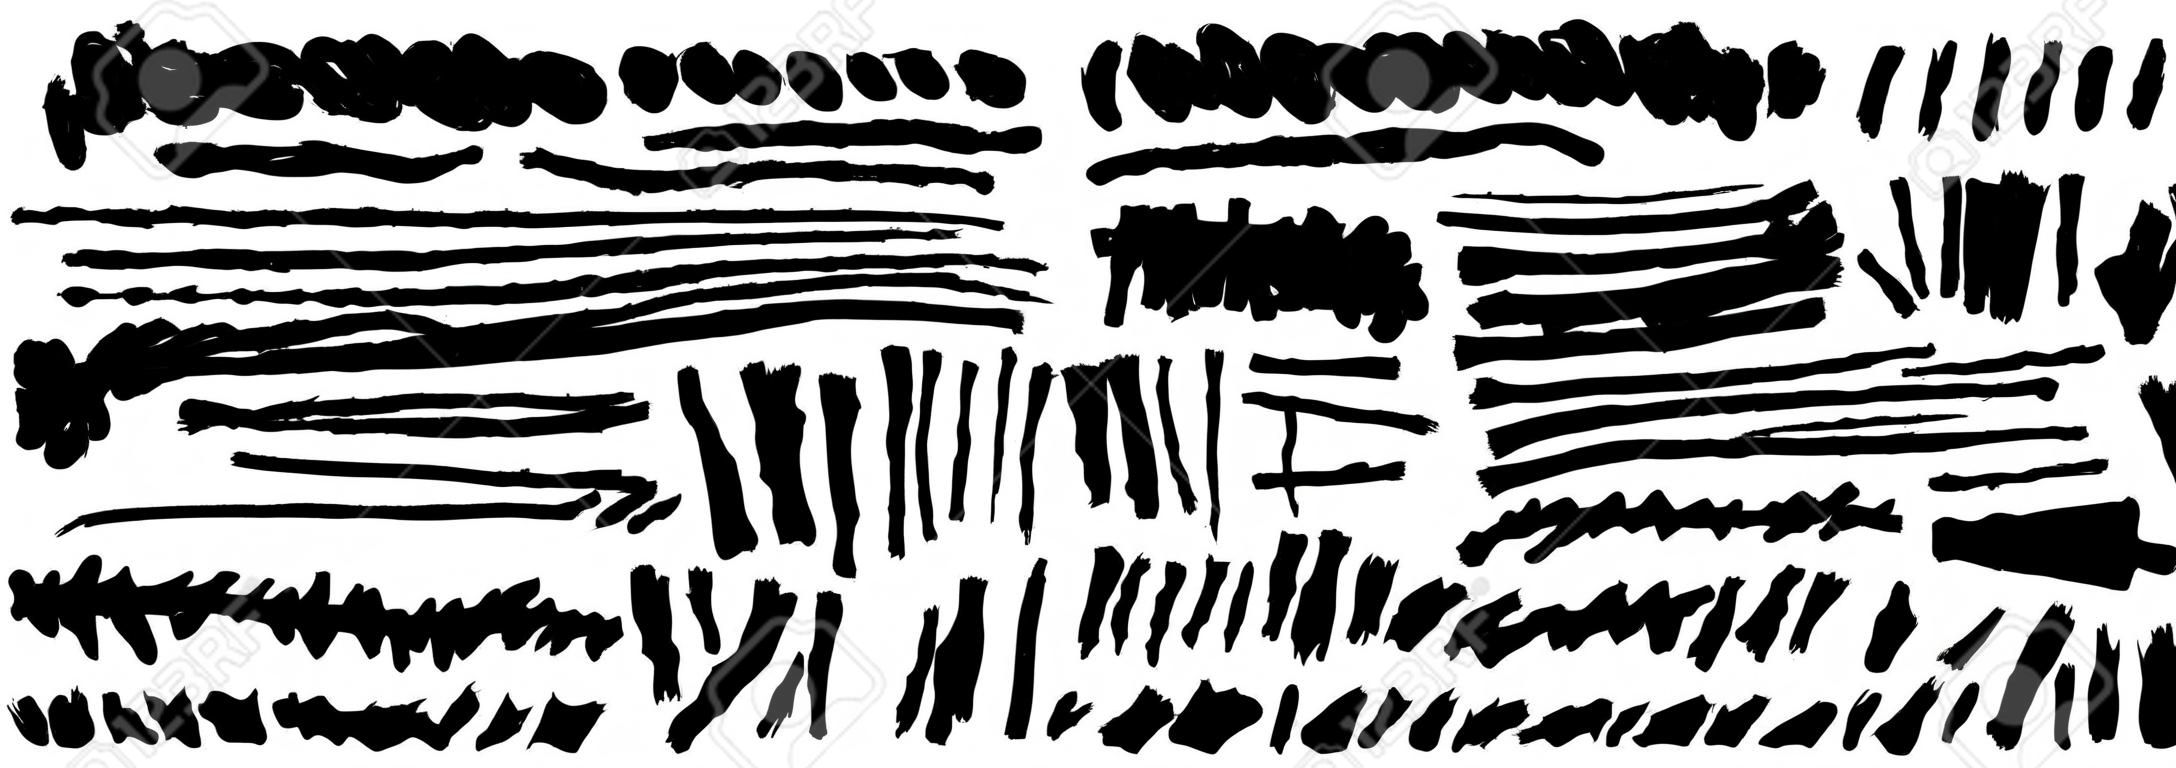 Satz von Hand zeichnet schwarze Farbe, Pinselstriche, Pinsel, Linien. Schmutzige künstlerische Grunge-Design-Elemente. Vektor